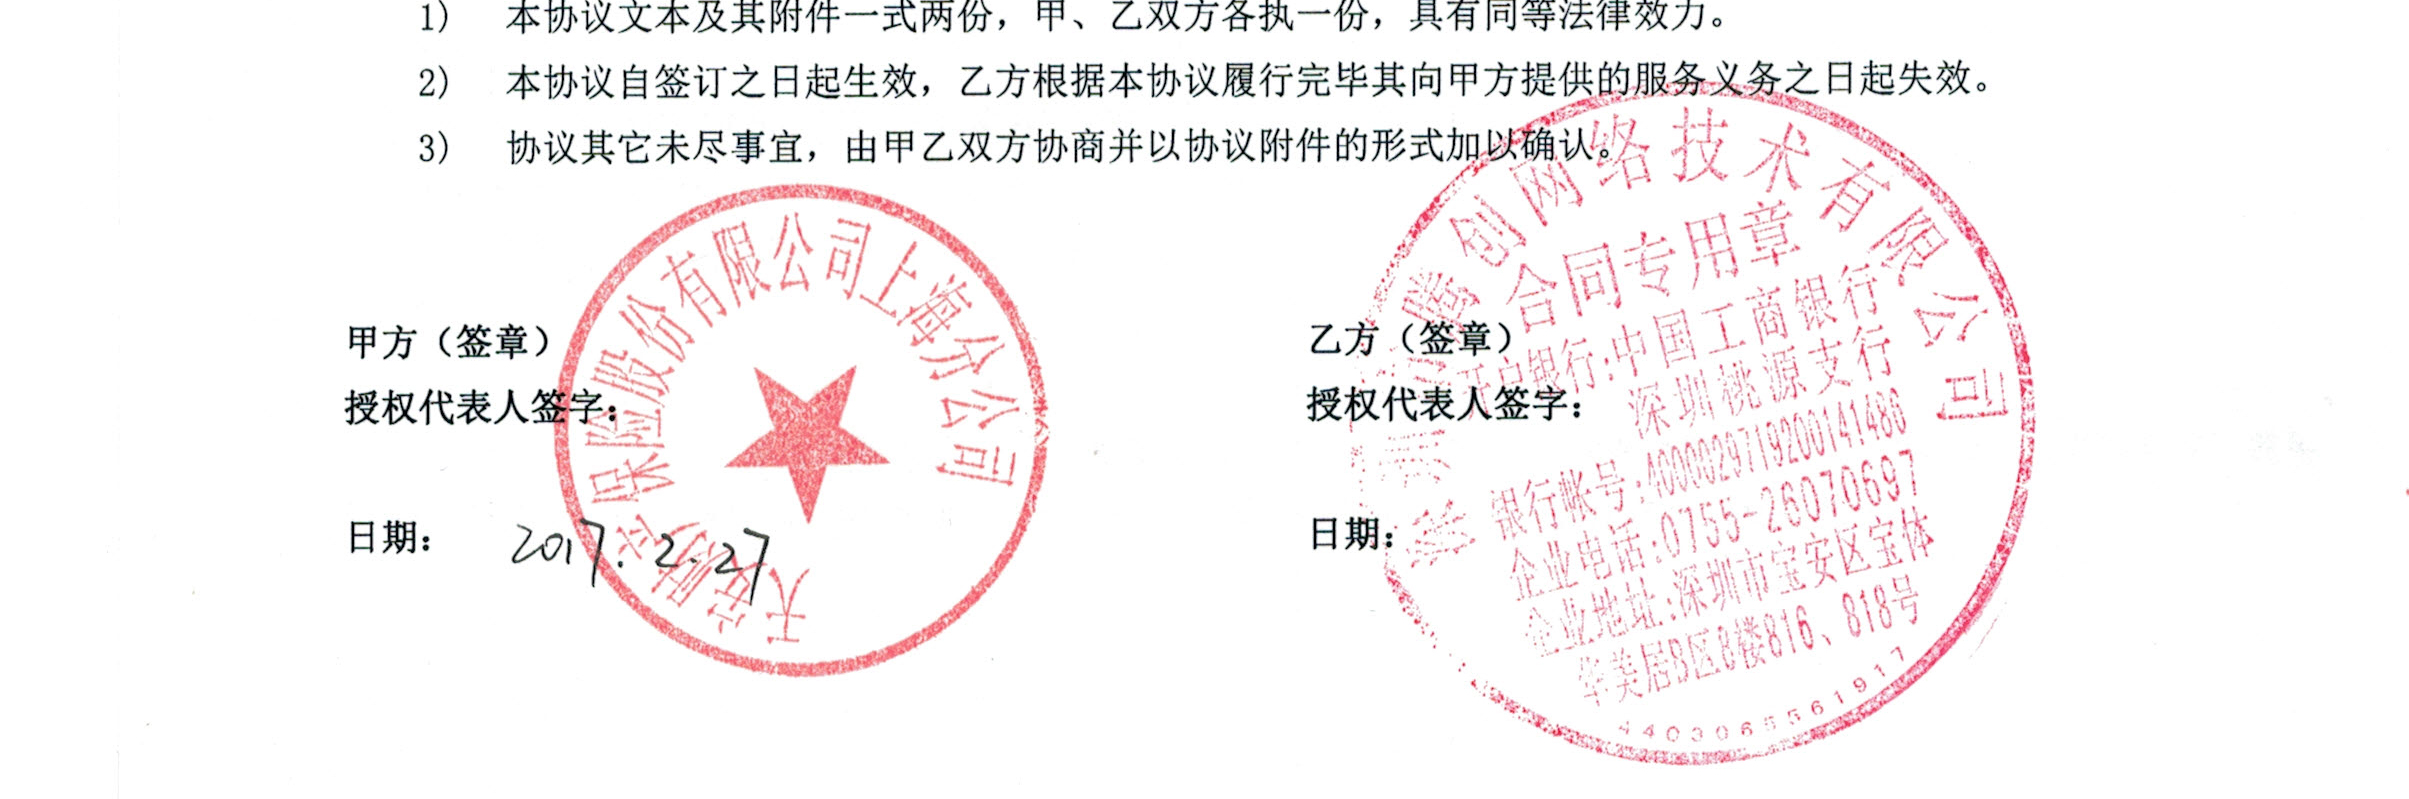 天安财产保险股份有限公司上海分公司天安财产保险股份有限公司上海分公司